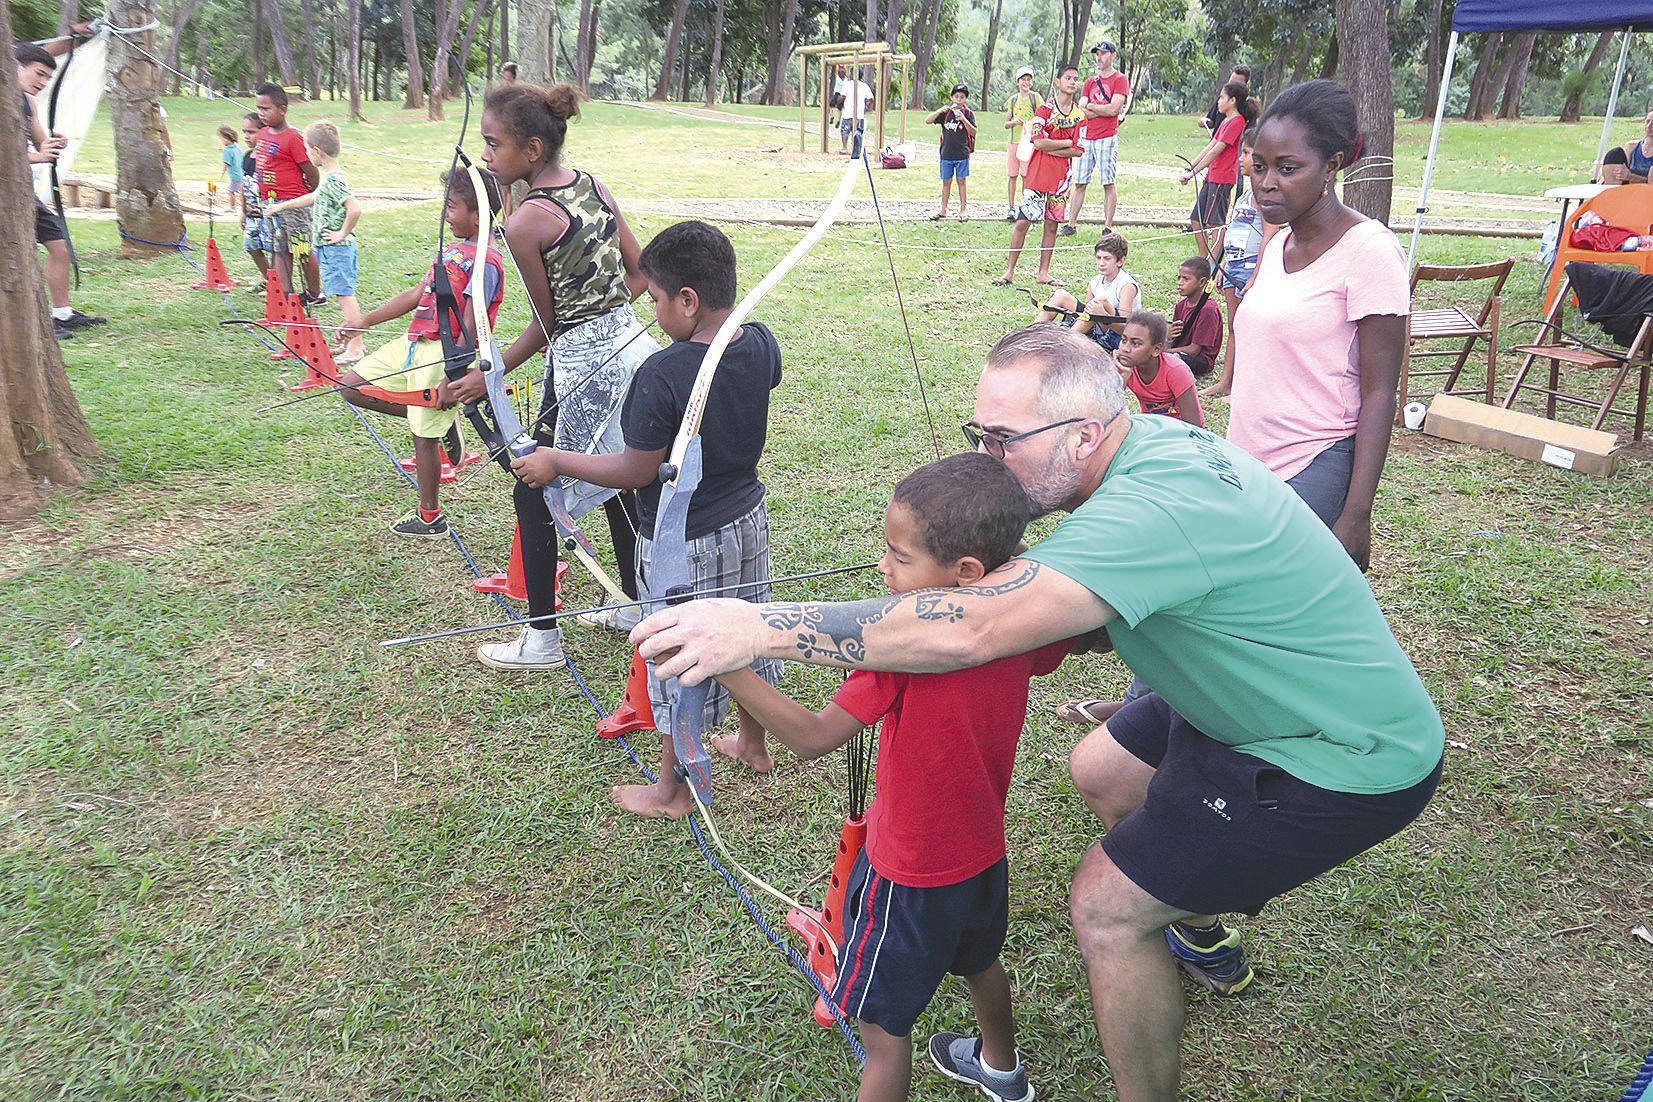 Le tir à l’arc, animé par le Dumbéa Archerie Club, a été l’un des stands les plus fréquentés samedi.